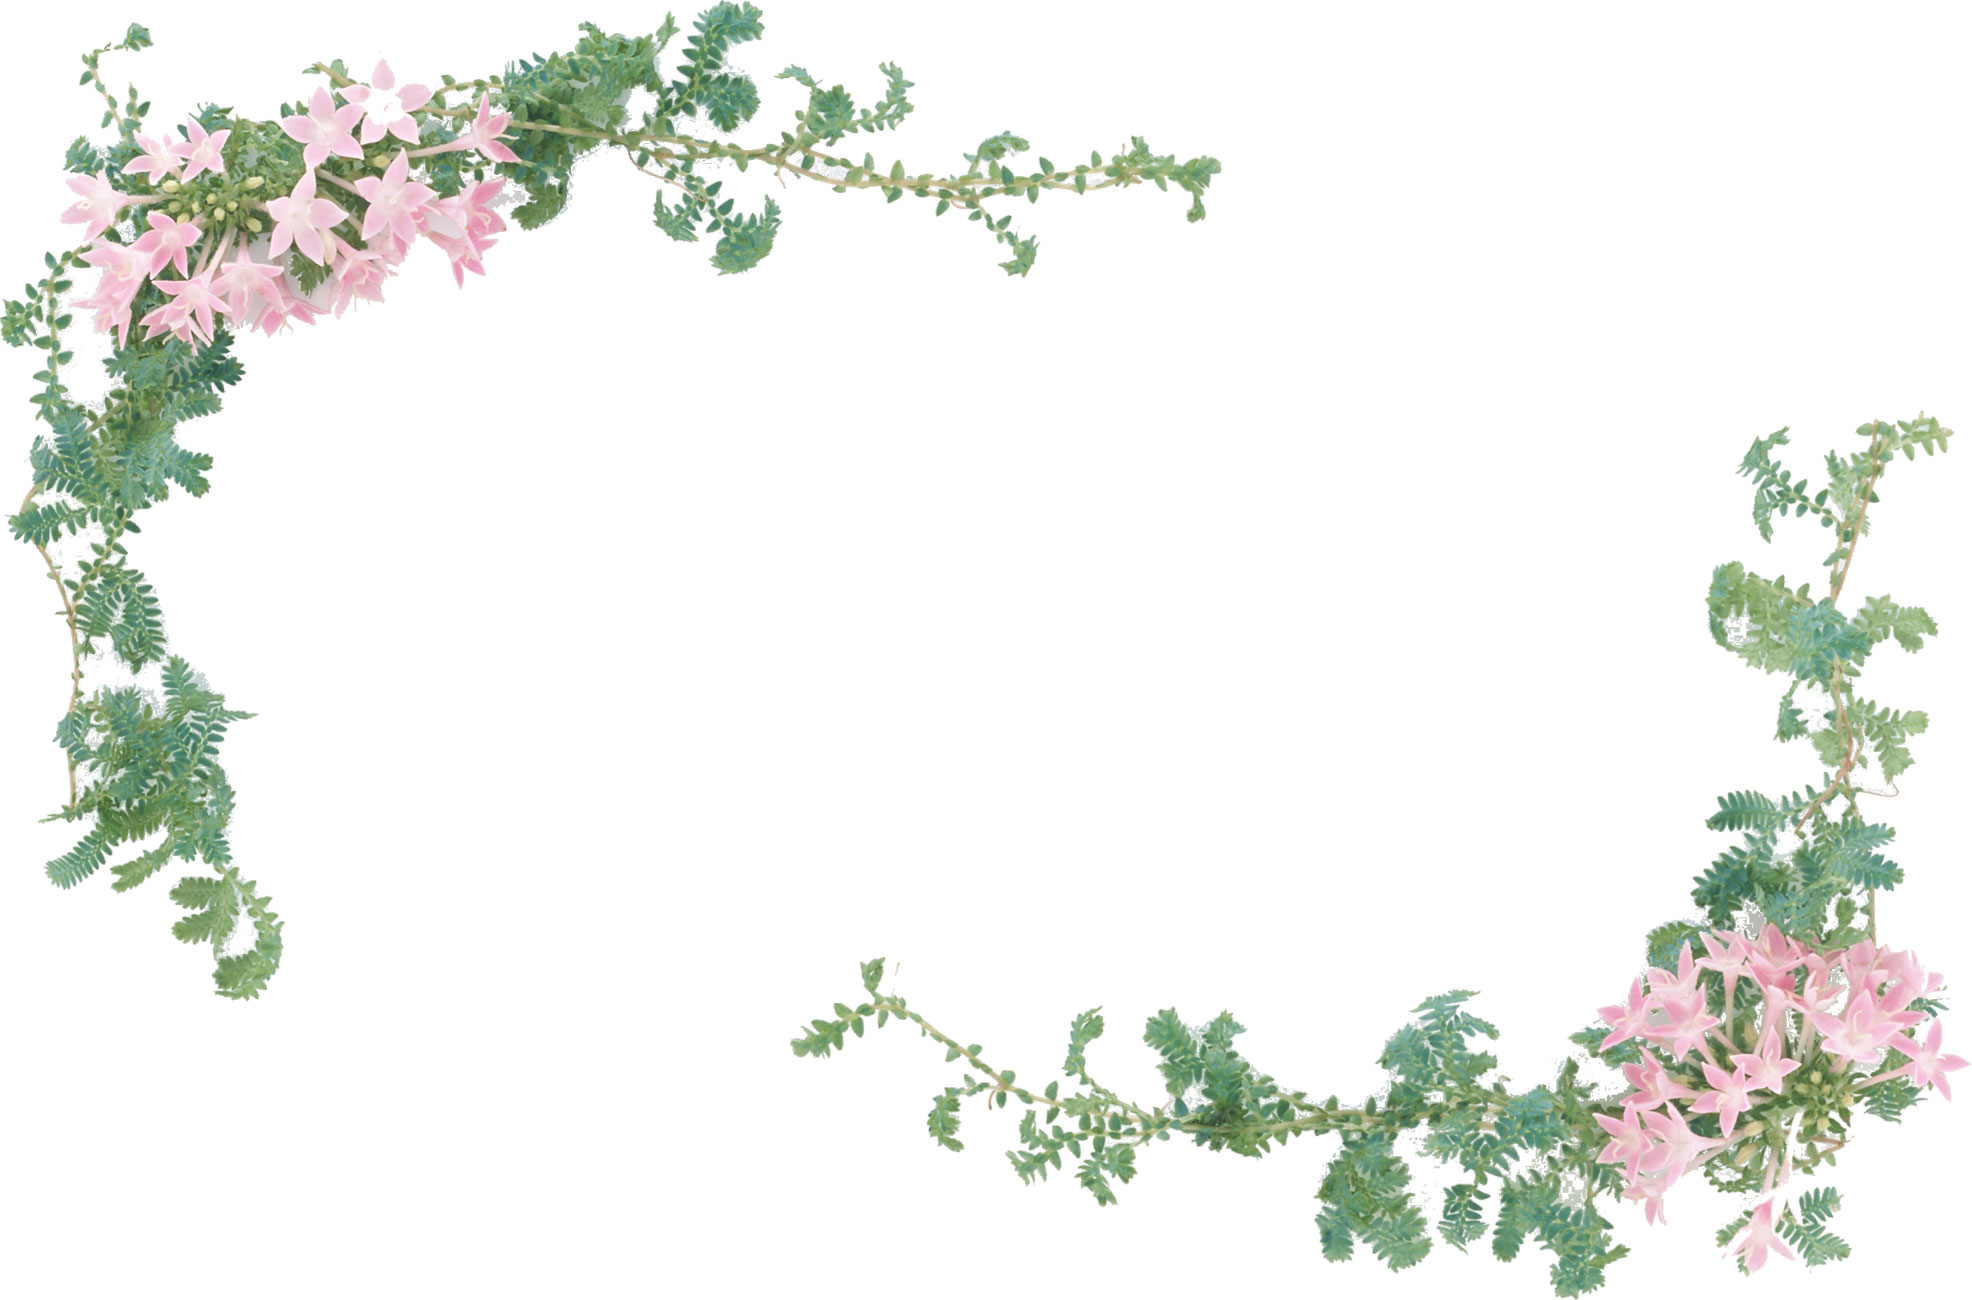 ピンクの花の写真 フリー素材 No 532 ピンク 緑 葉